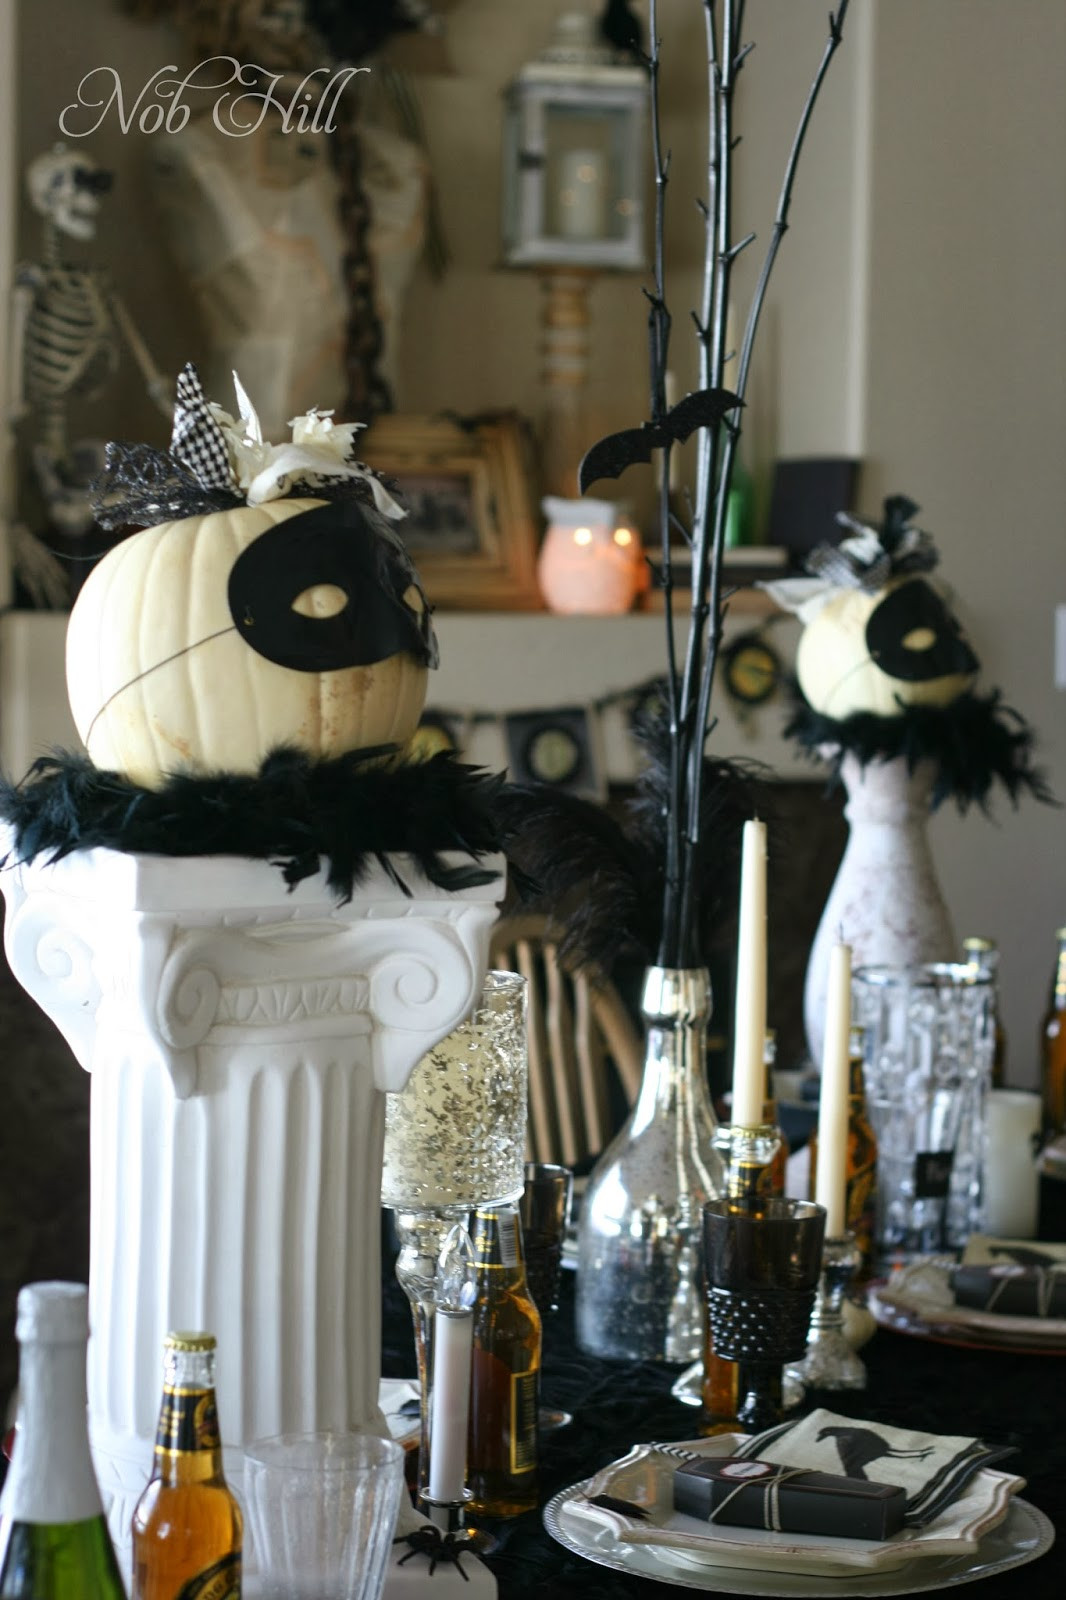 Halloween Masquerade Party Ideas
 Nob Hill Masquerade Halloween Dinner Party